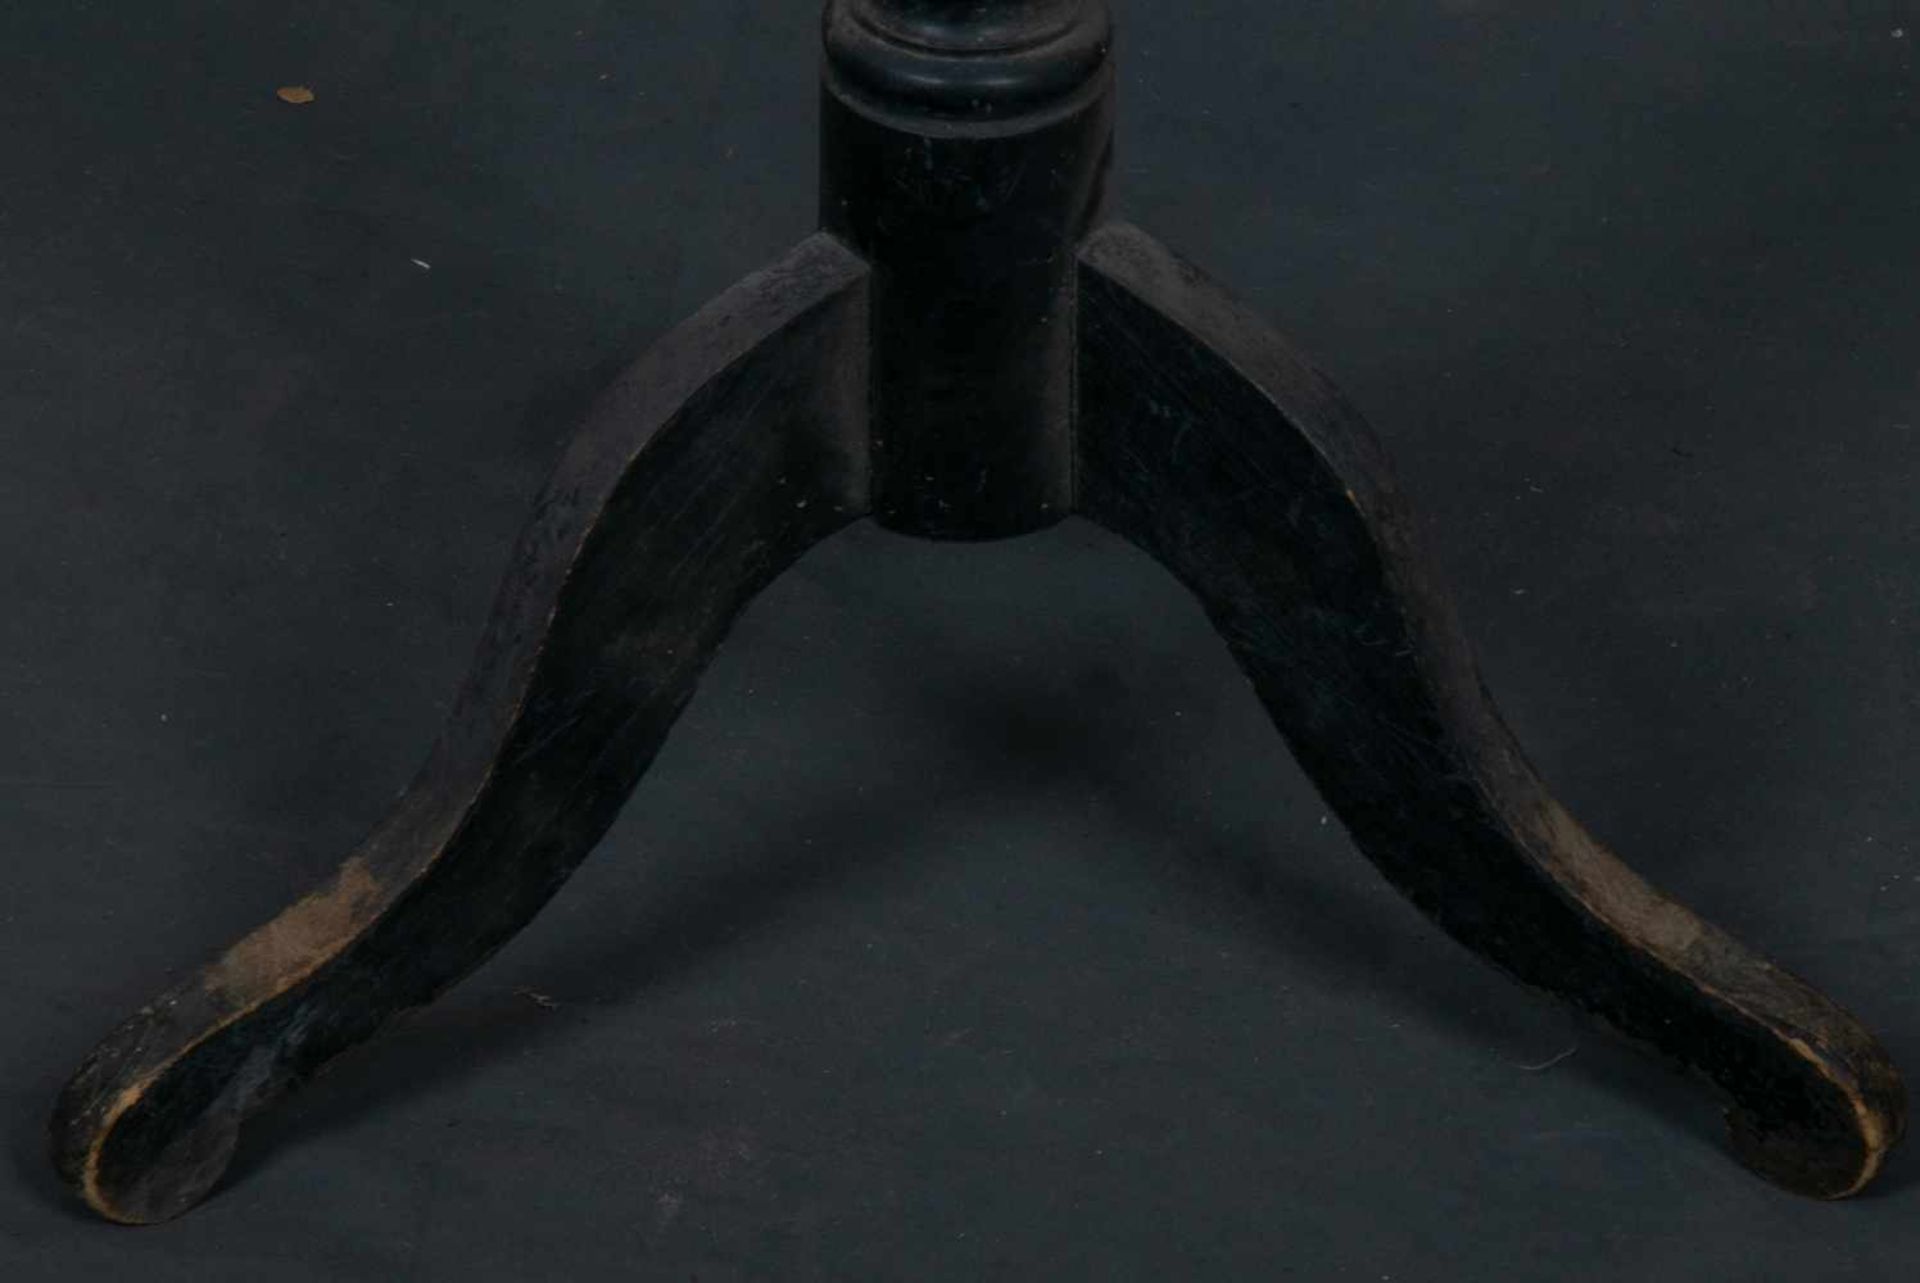 Schneiderpuppe um 1900/20. Schwarz lackierter 3beiniger Standfuß mit verstellbarem "Oberkörper". - Bild 6 aus 6